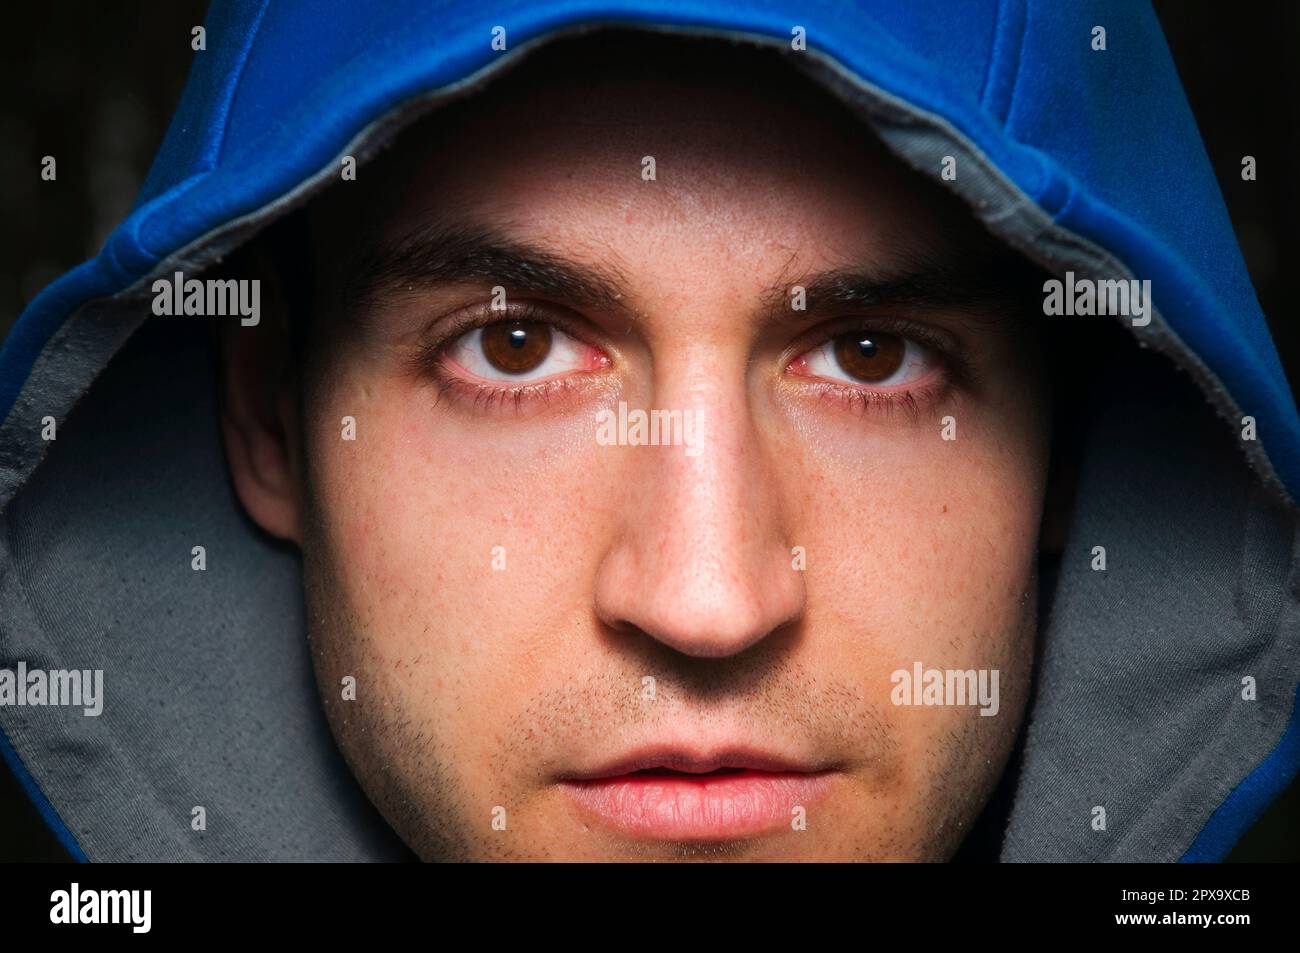 Ritratto frontale di un giovane uomo con cappuccio blu che guarda direttamente e con pietà la fotocamera. Foto Stock